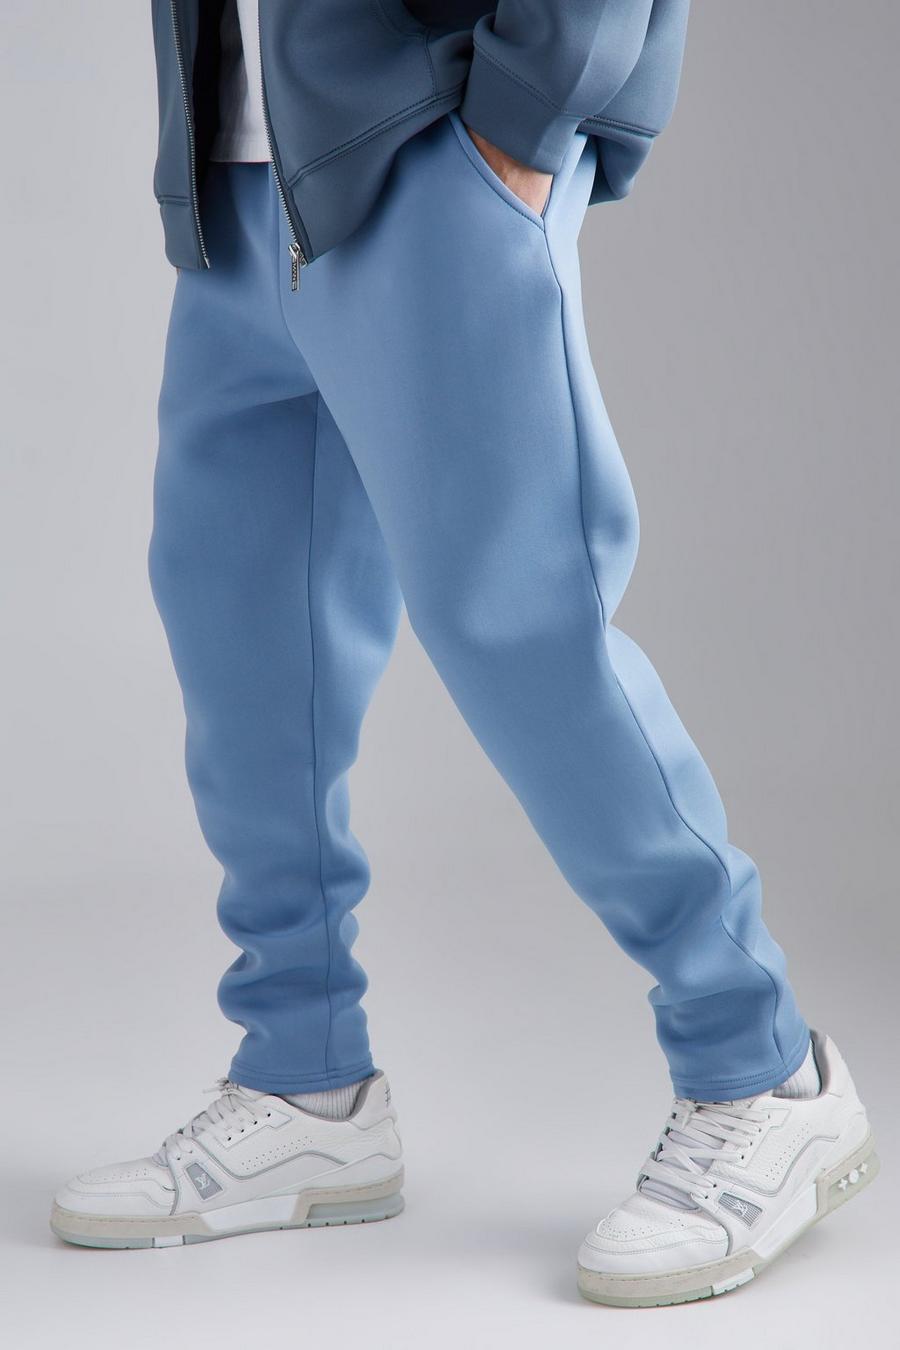 Pantalón deportivo ajustado crop de scuba, Dusty blue